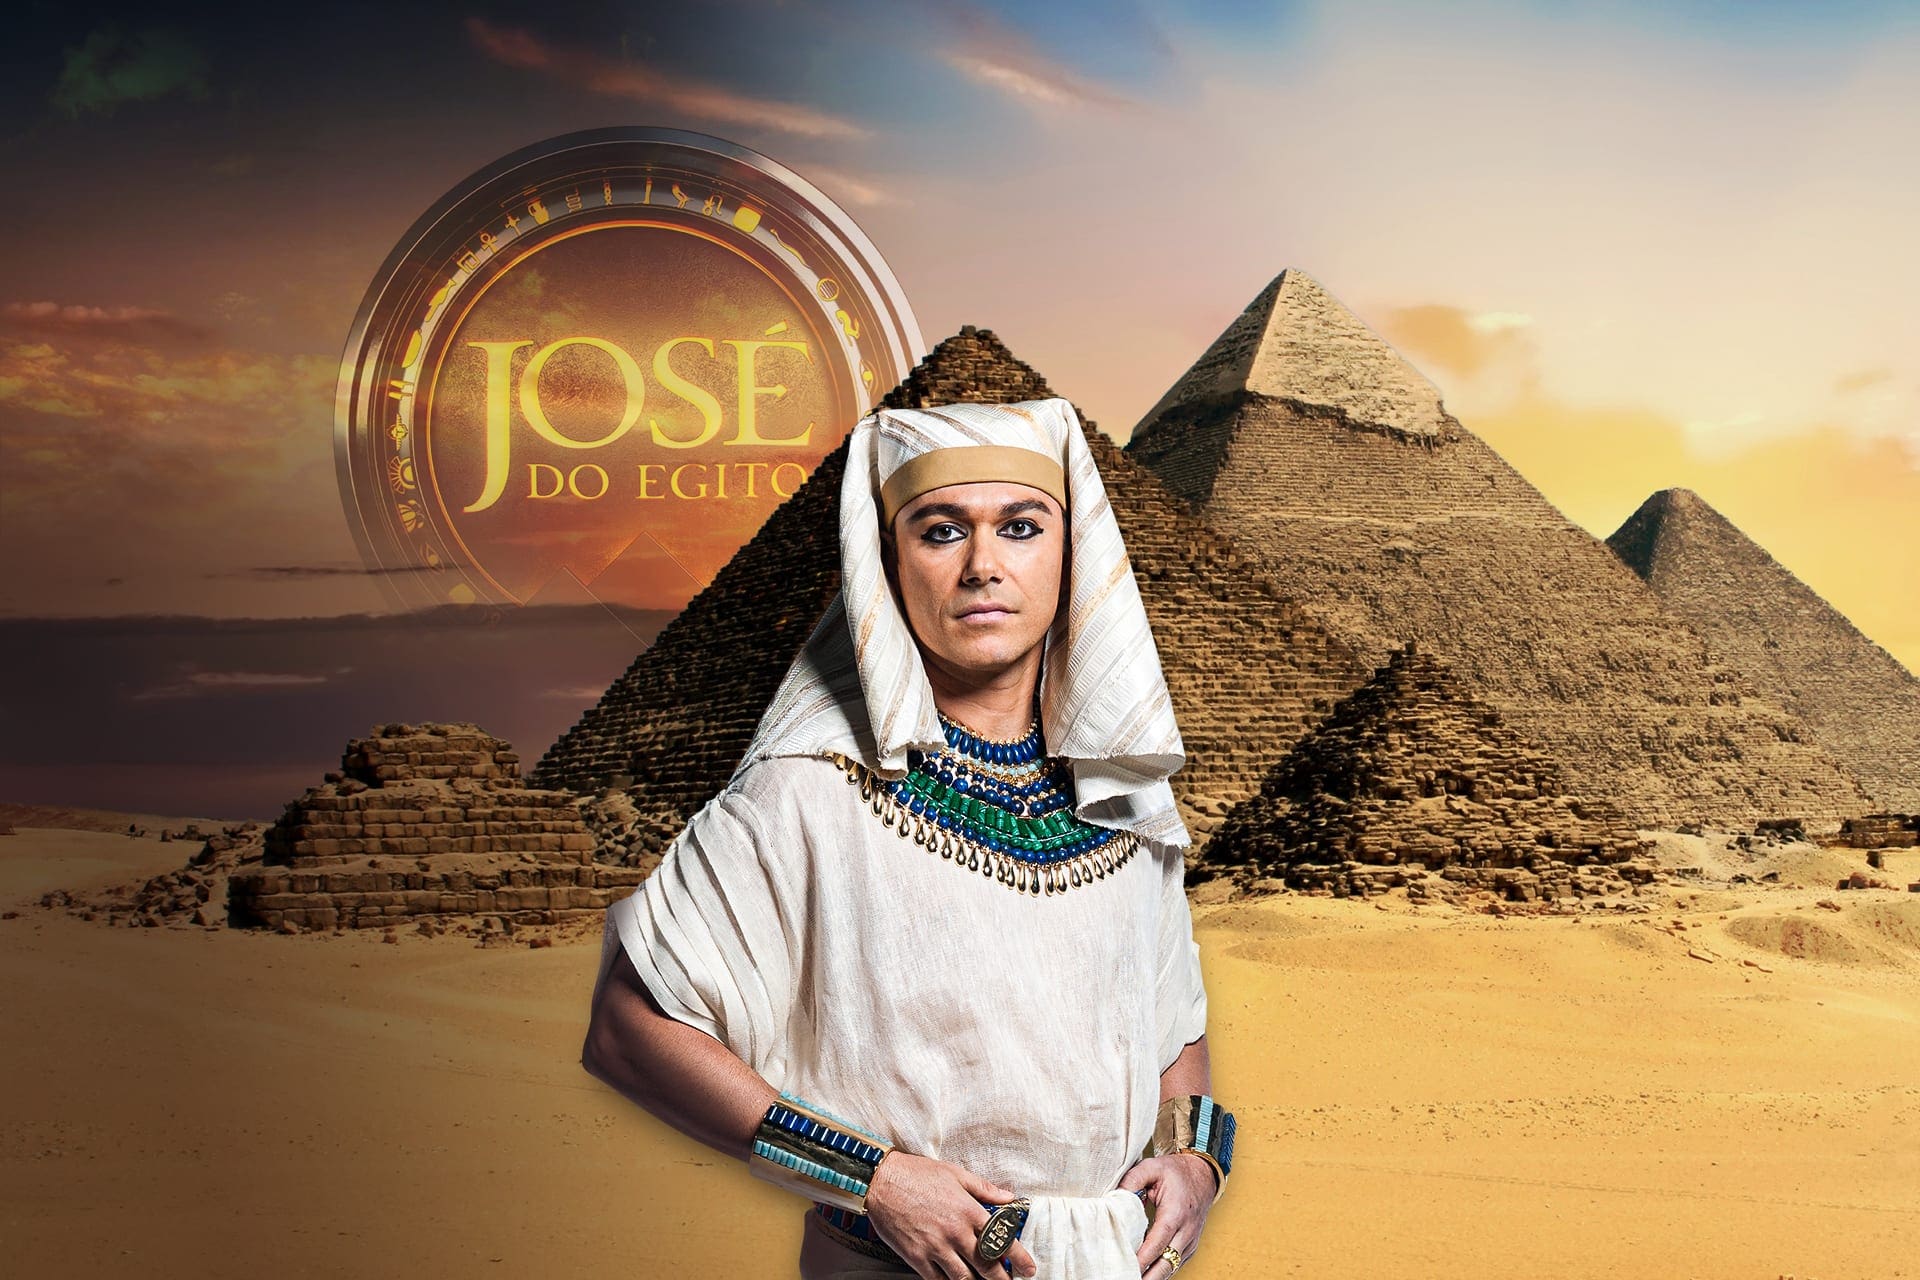 José do Egito